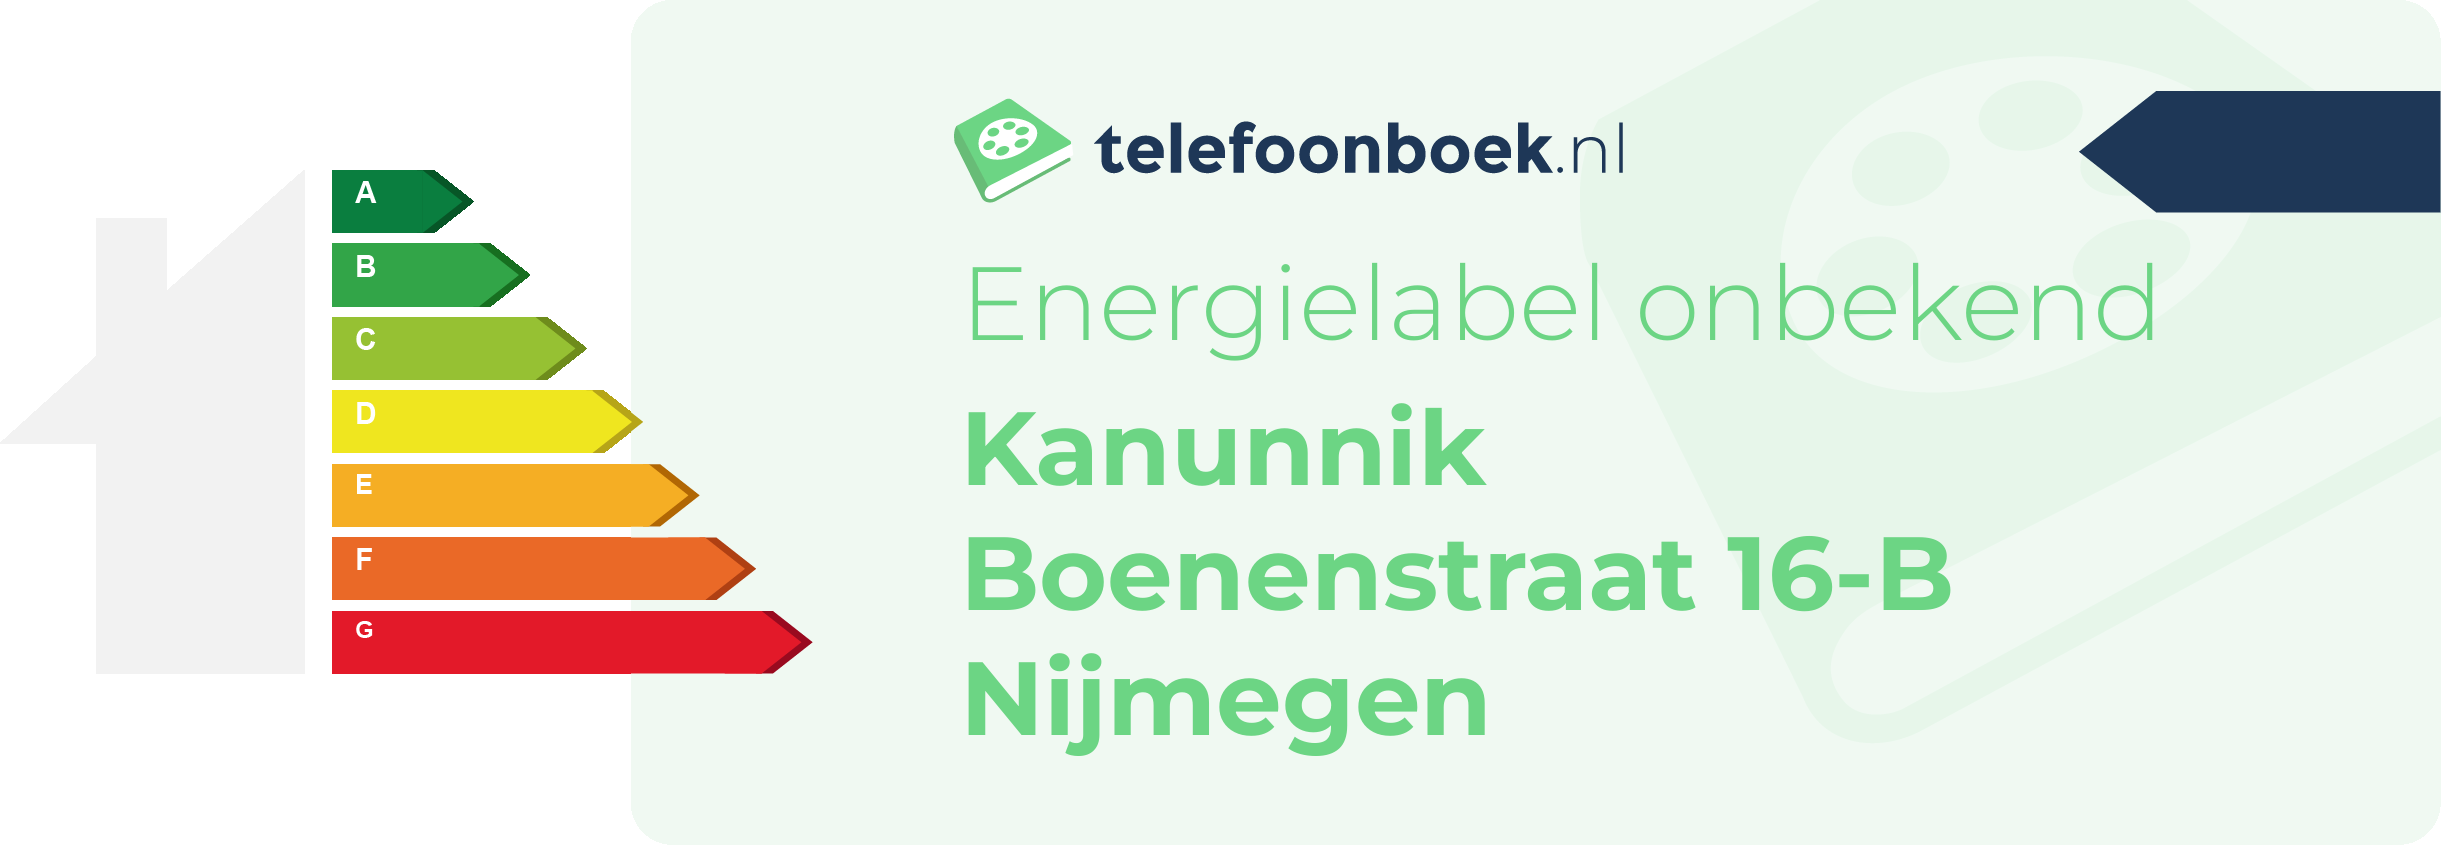 Energielabel Kanunnik Boenenstraat 16-B Nijmegen